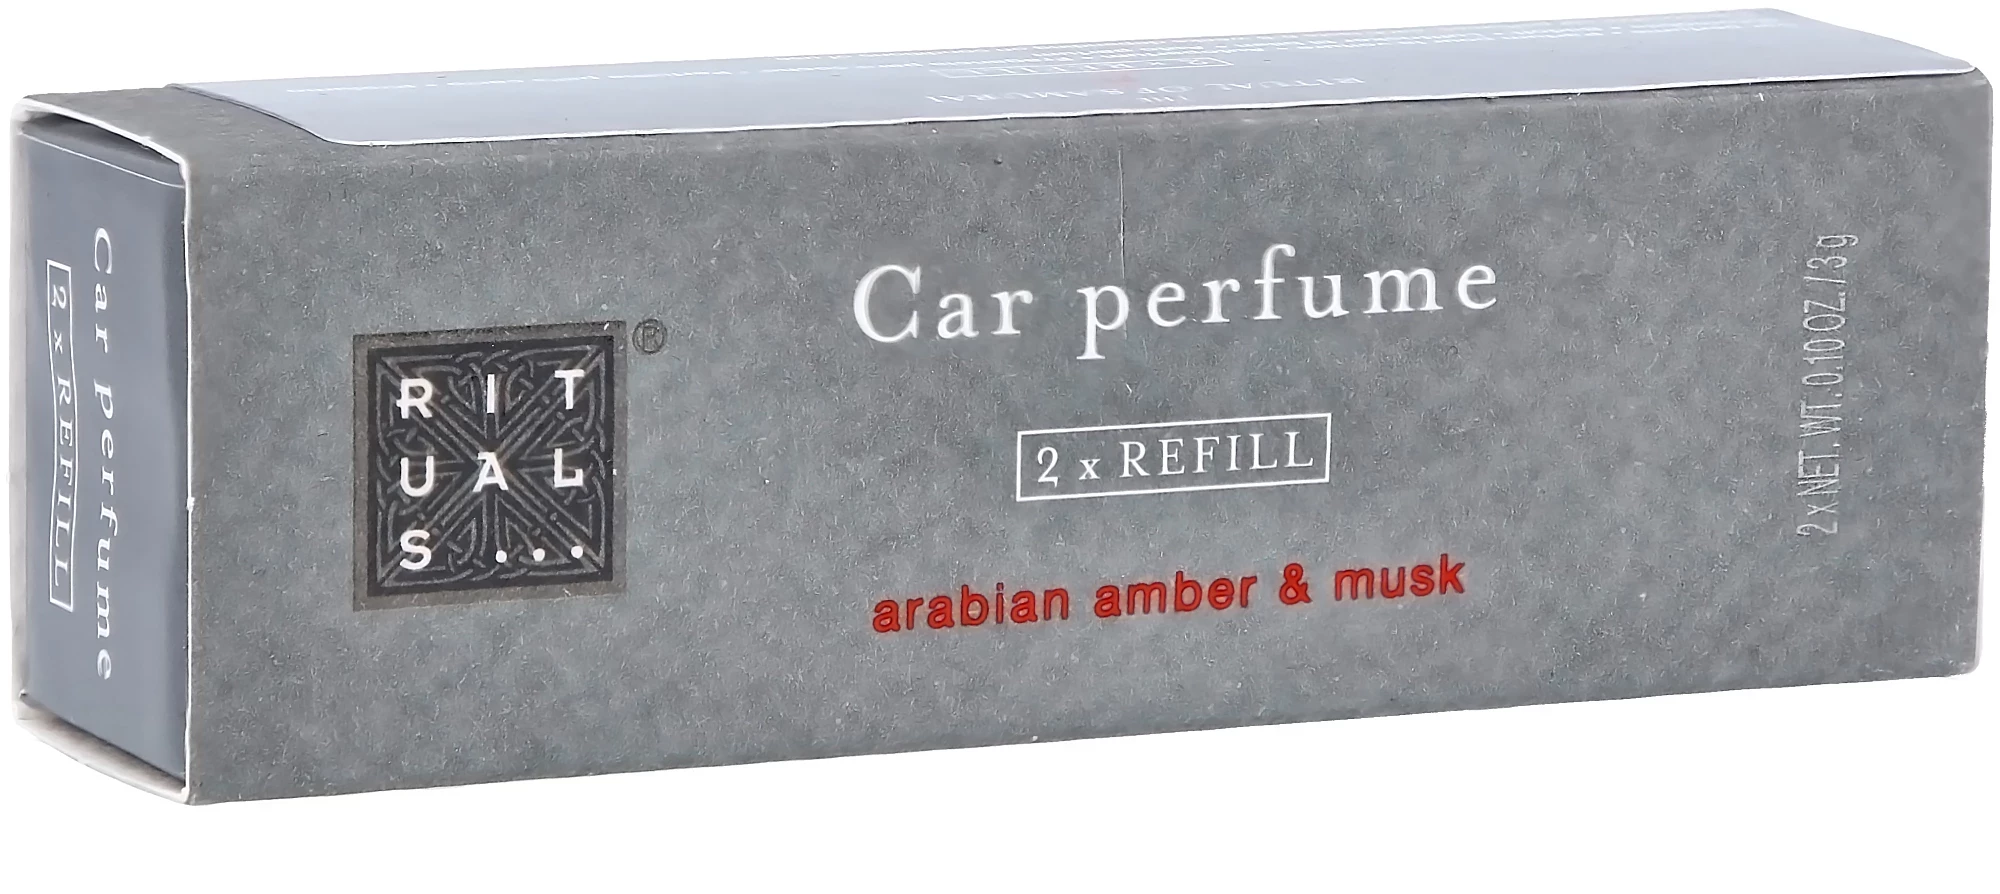 RITUALS CAR PERFUME REFILL ARABIAN AMBER MUSK